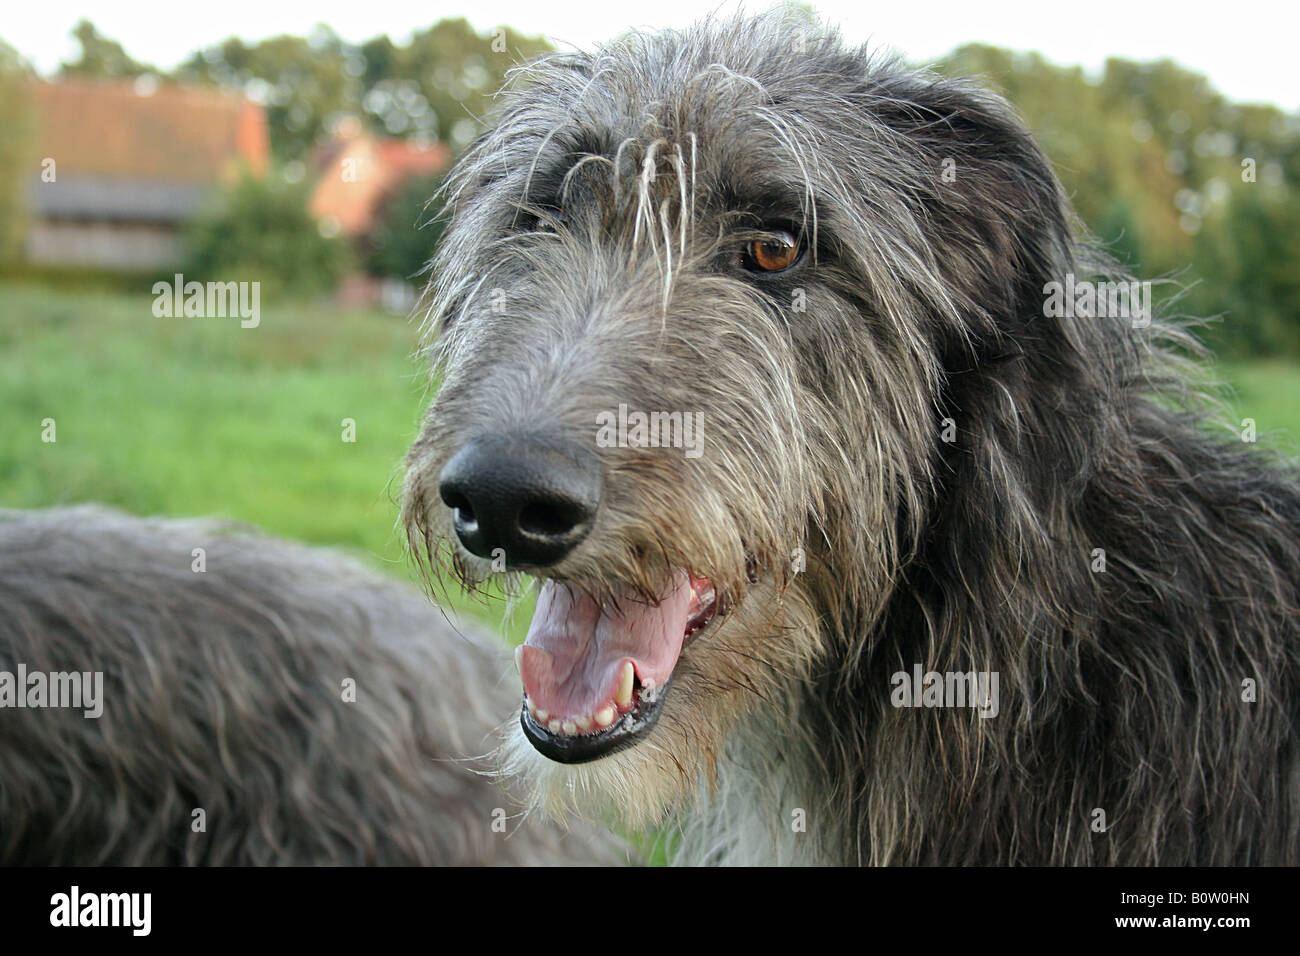 Irish Wolfhound (Canis familiaris). Portrait of adult dog Stock Photo